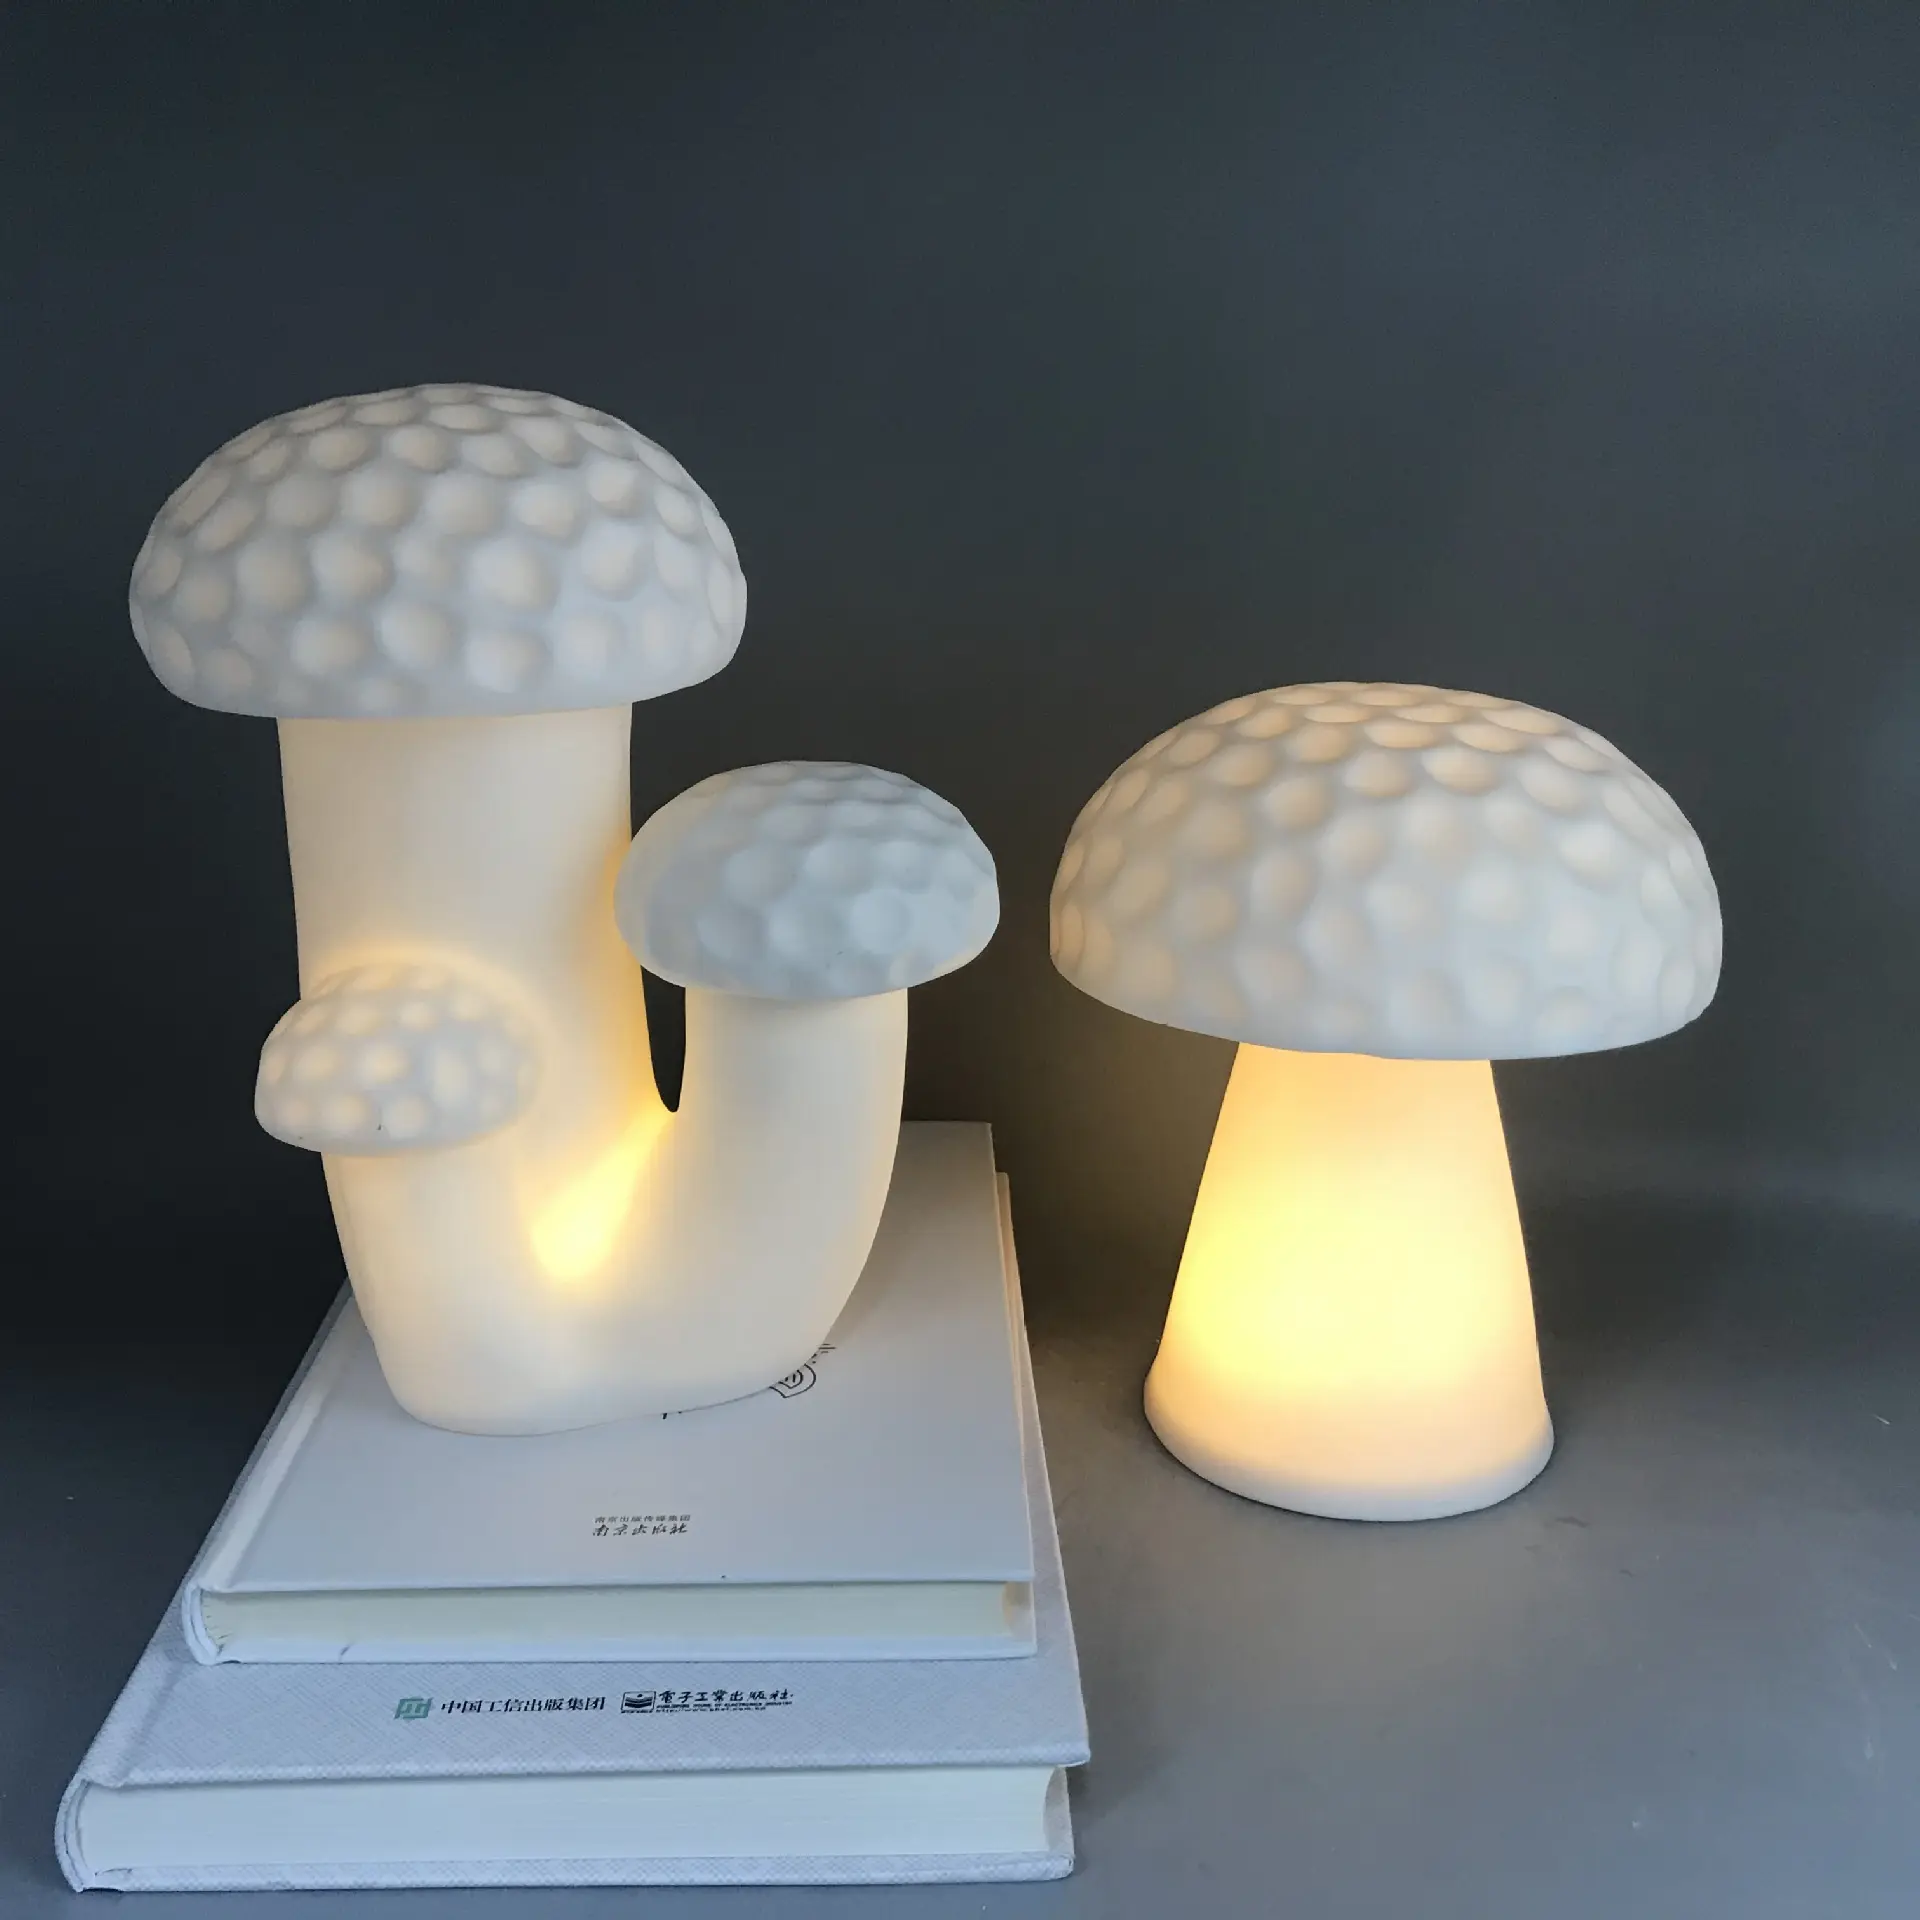 Kids night lamp mushroom suitable decoration kids room cute night light ceramics table desk lamp